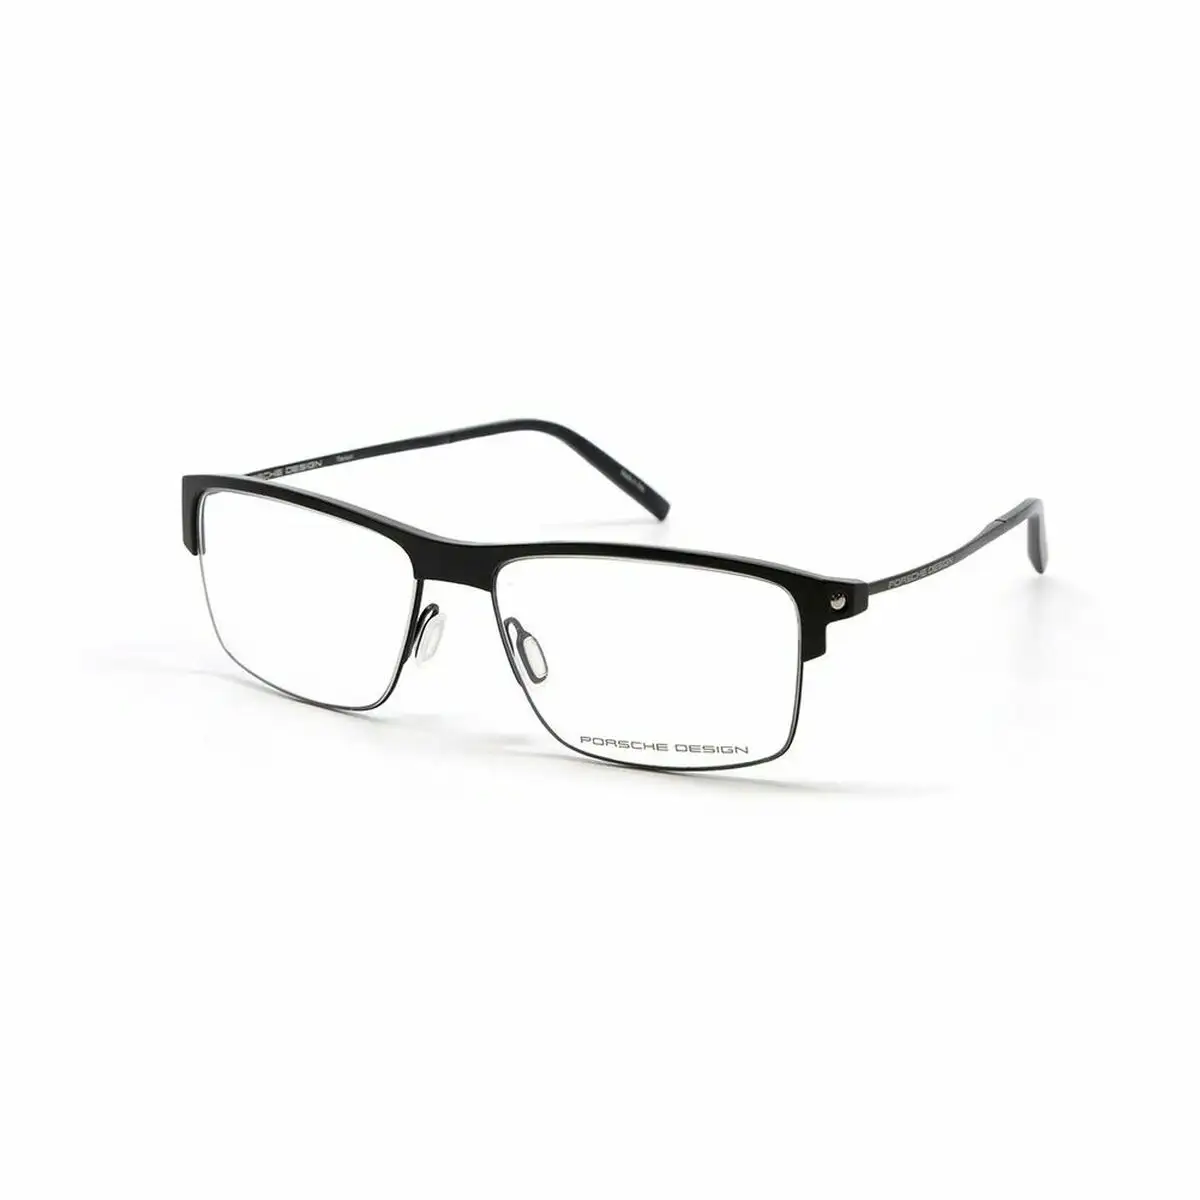 Monture de lunettes homme porsche p8361 a noir_4046. DIAYTAR SENEGAL - Votre Source de Trouvailles uniques. Naviguez à travers notre catalogue et trouvez des articles qui vous distinguent et reflètent votre unicité.